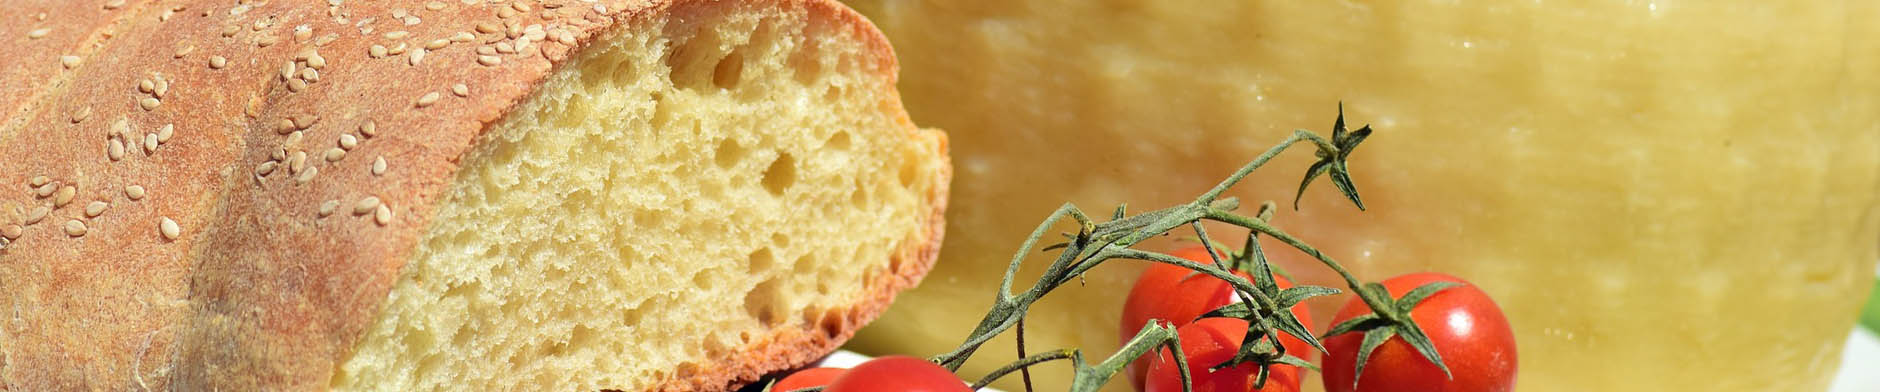 pane, pomodori e formaggio, prodotti tipici salentini